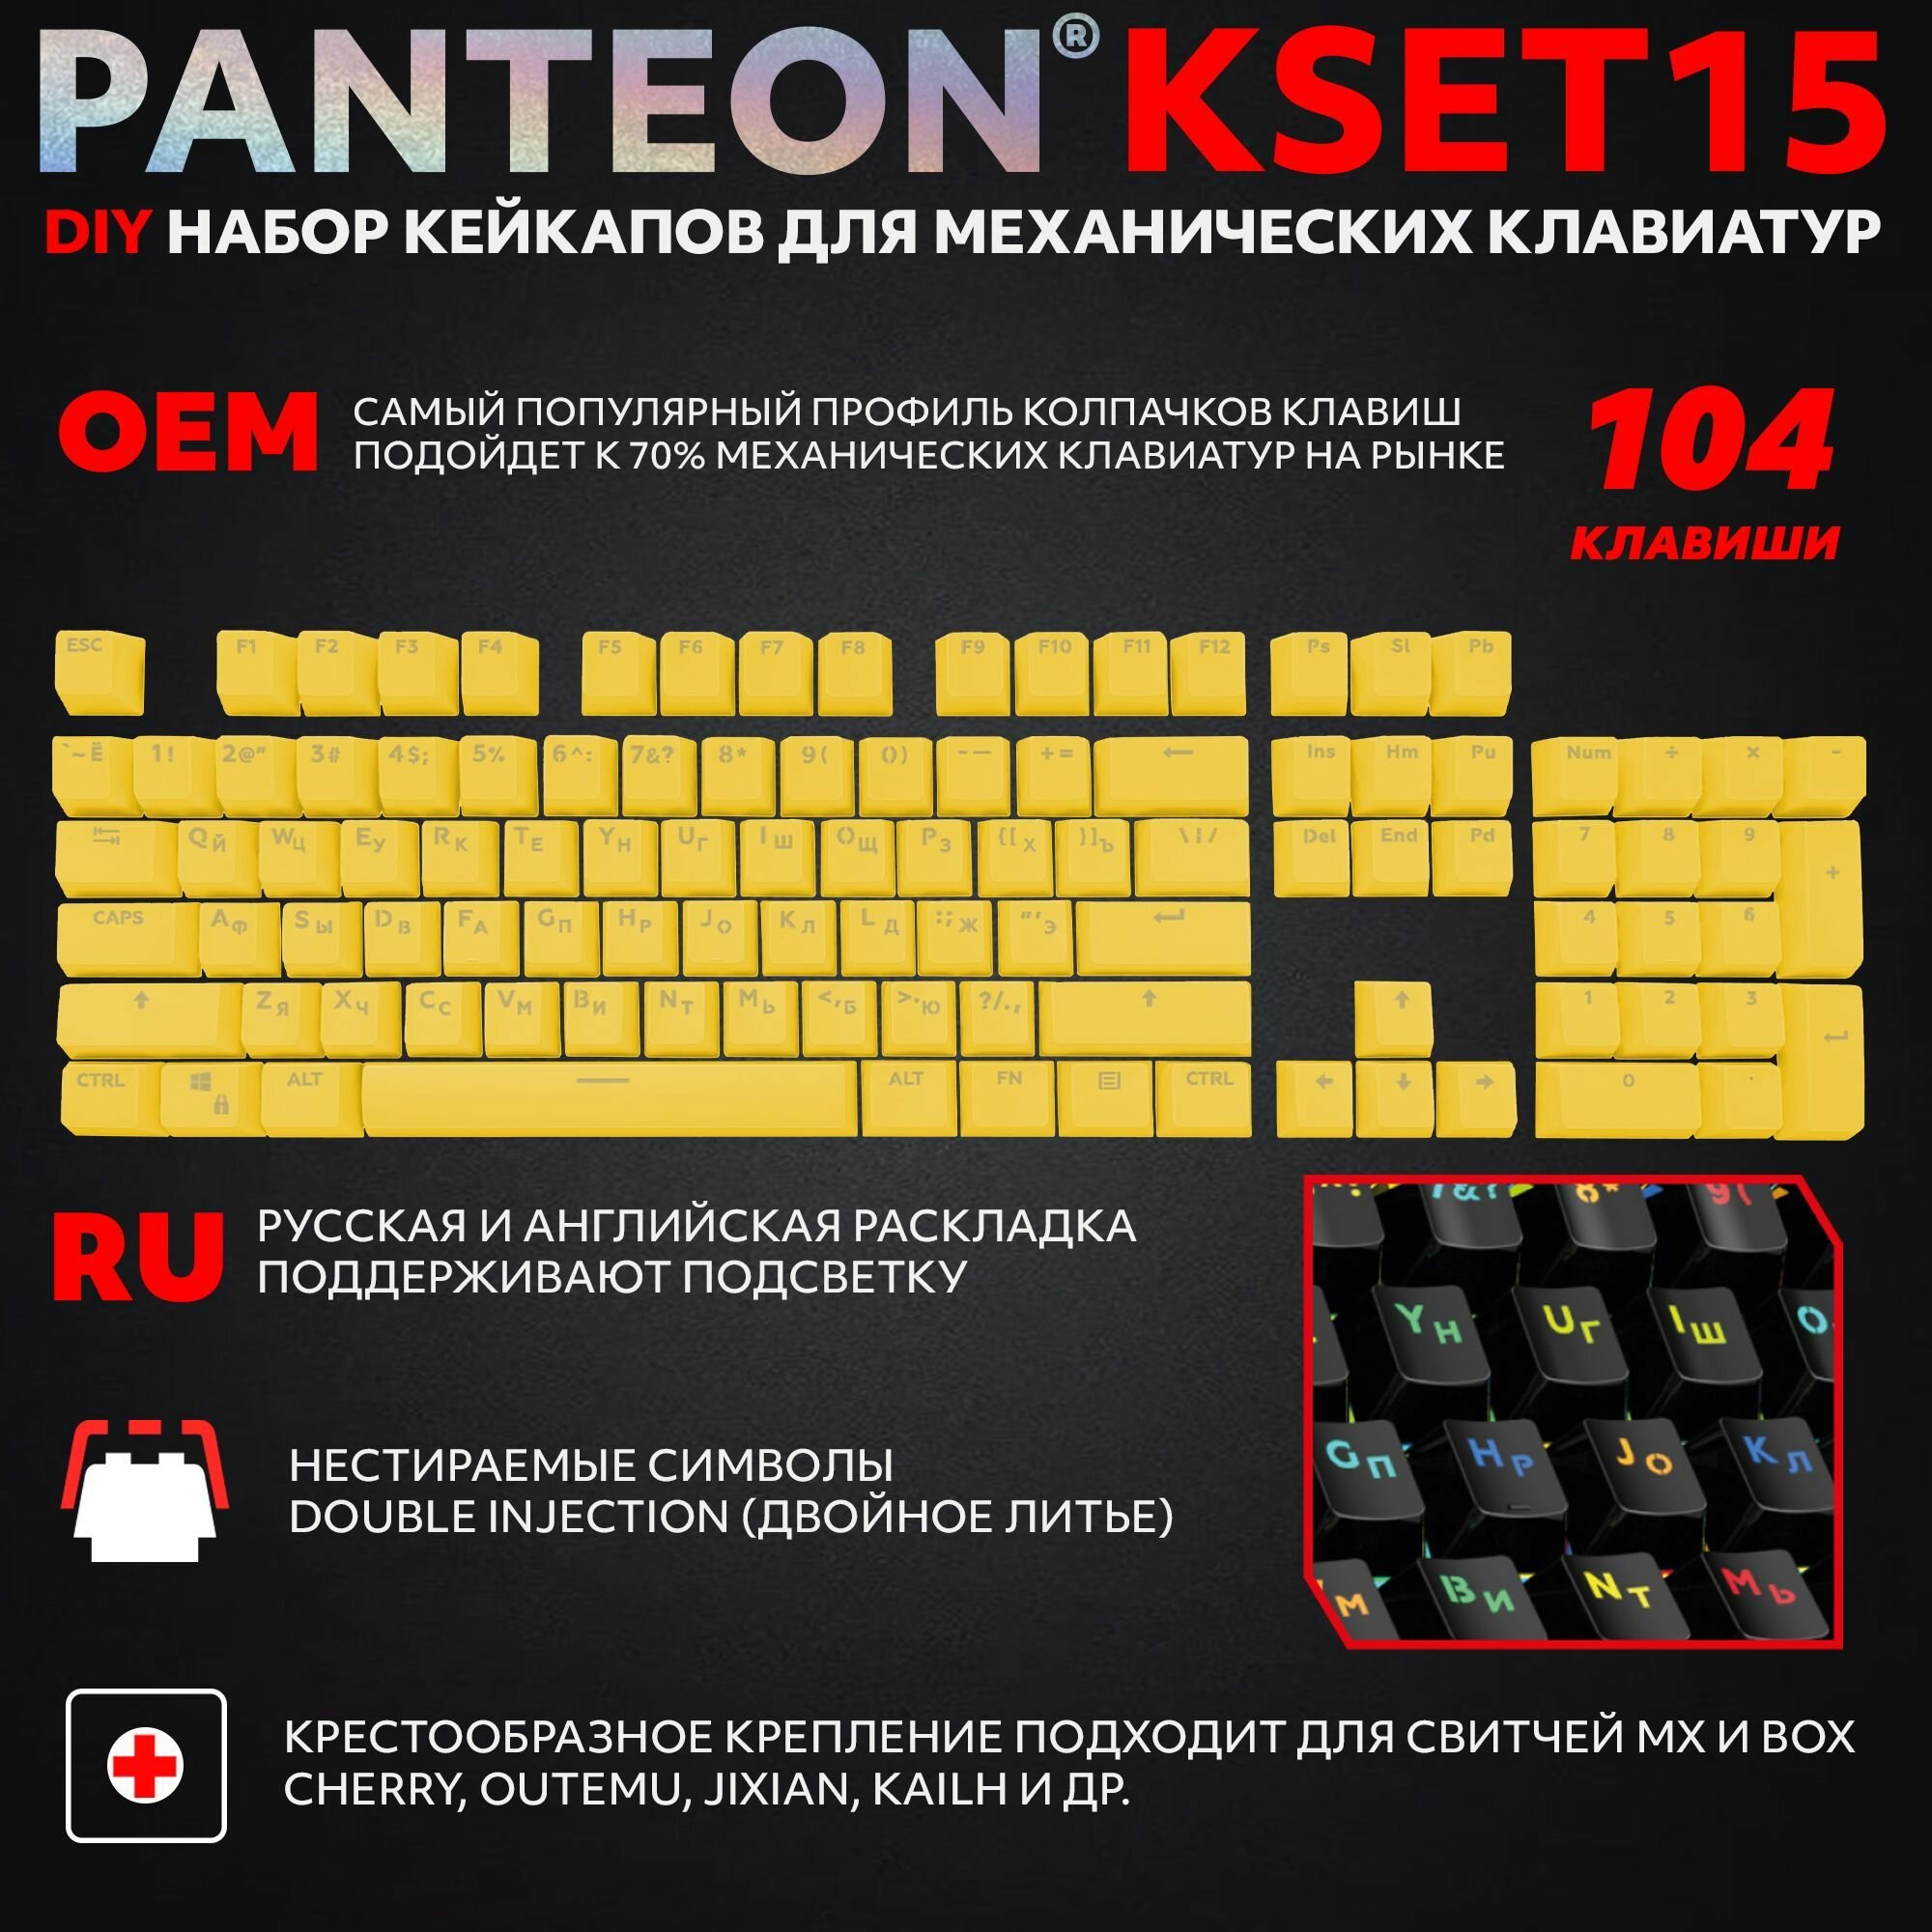 PANTEON KSET15 Yellow Универсальный набор кейкапов для механических клавиатур (104 клавиши), цвет: желтый